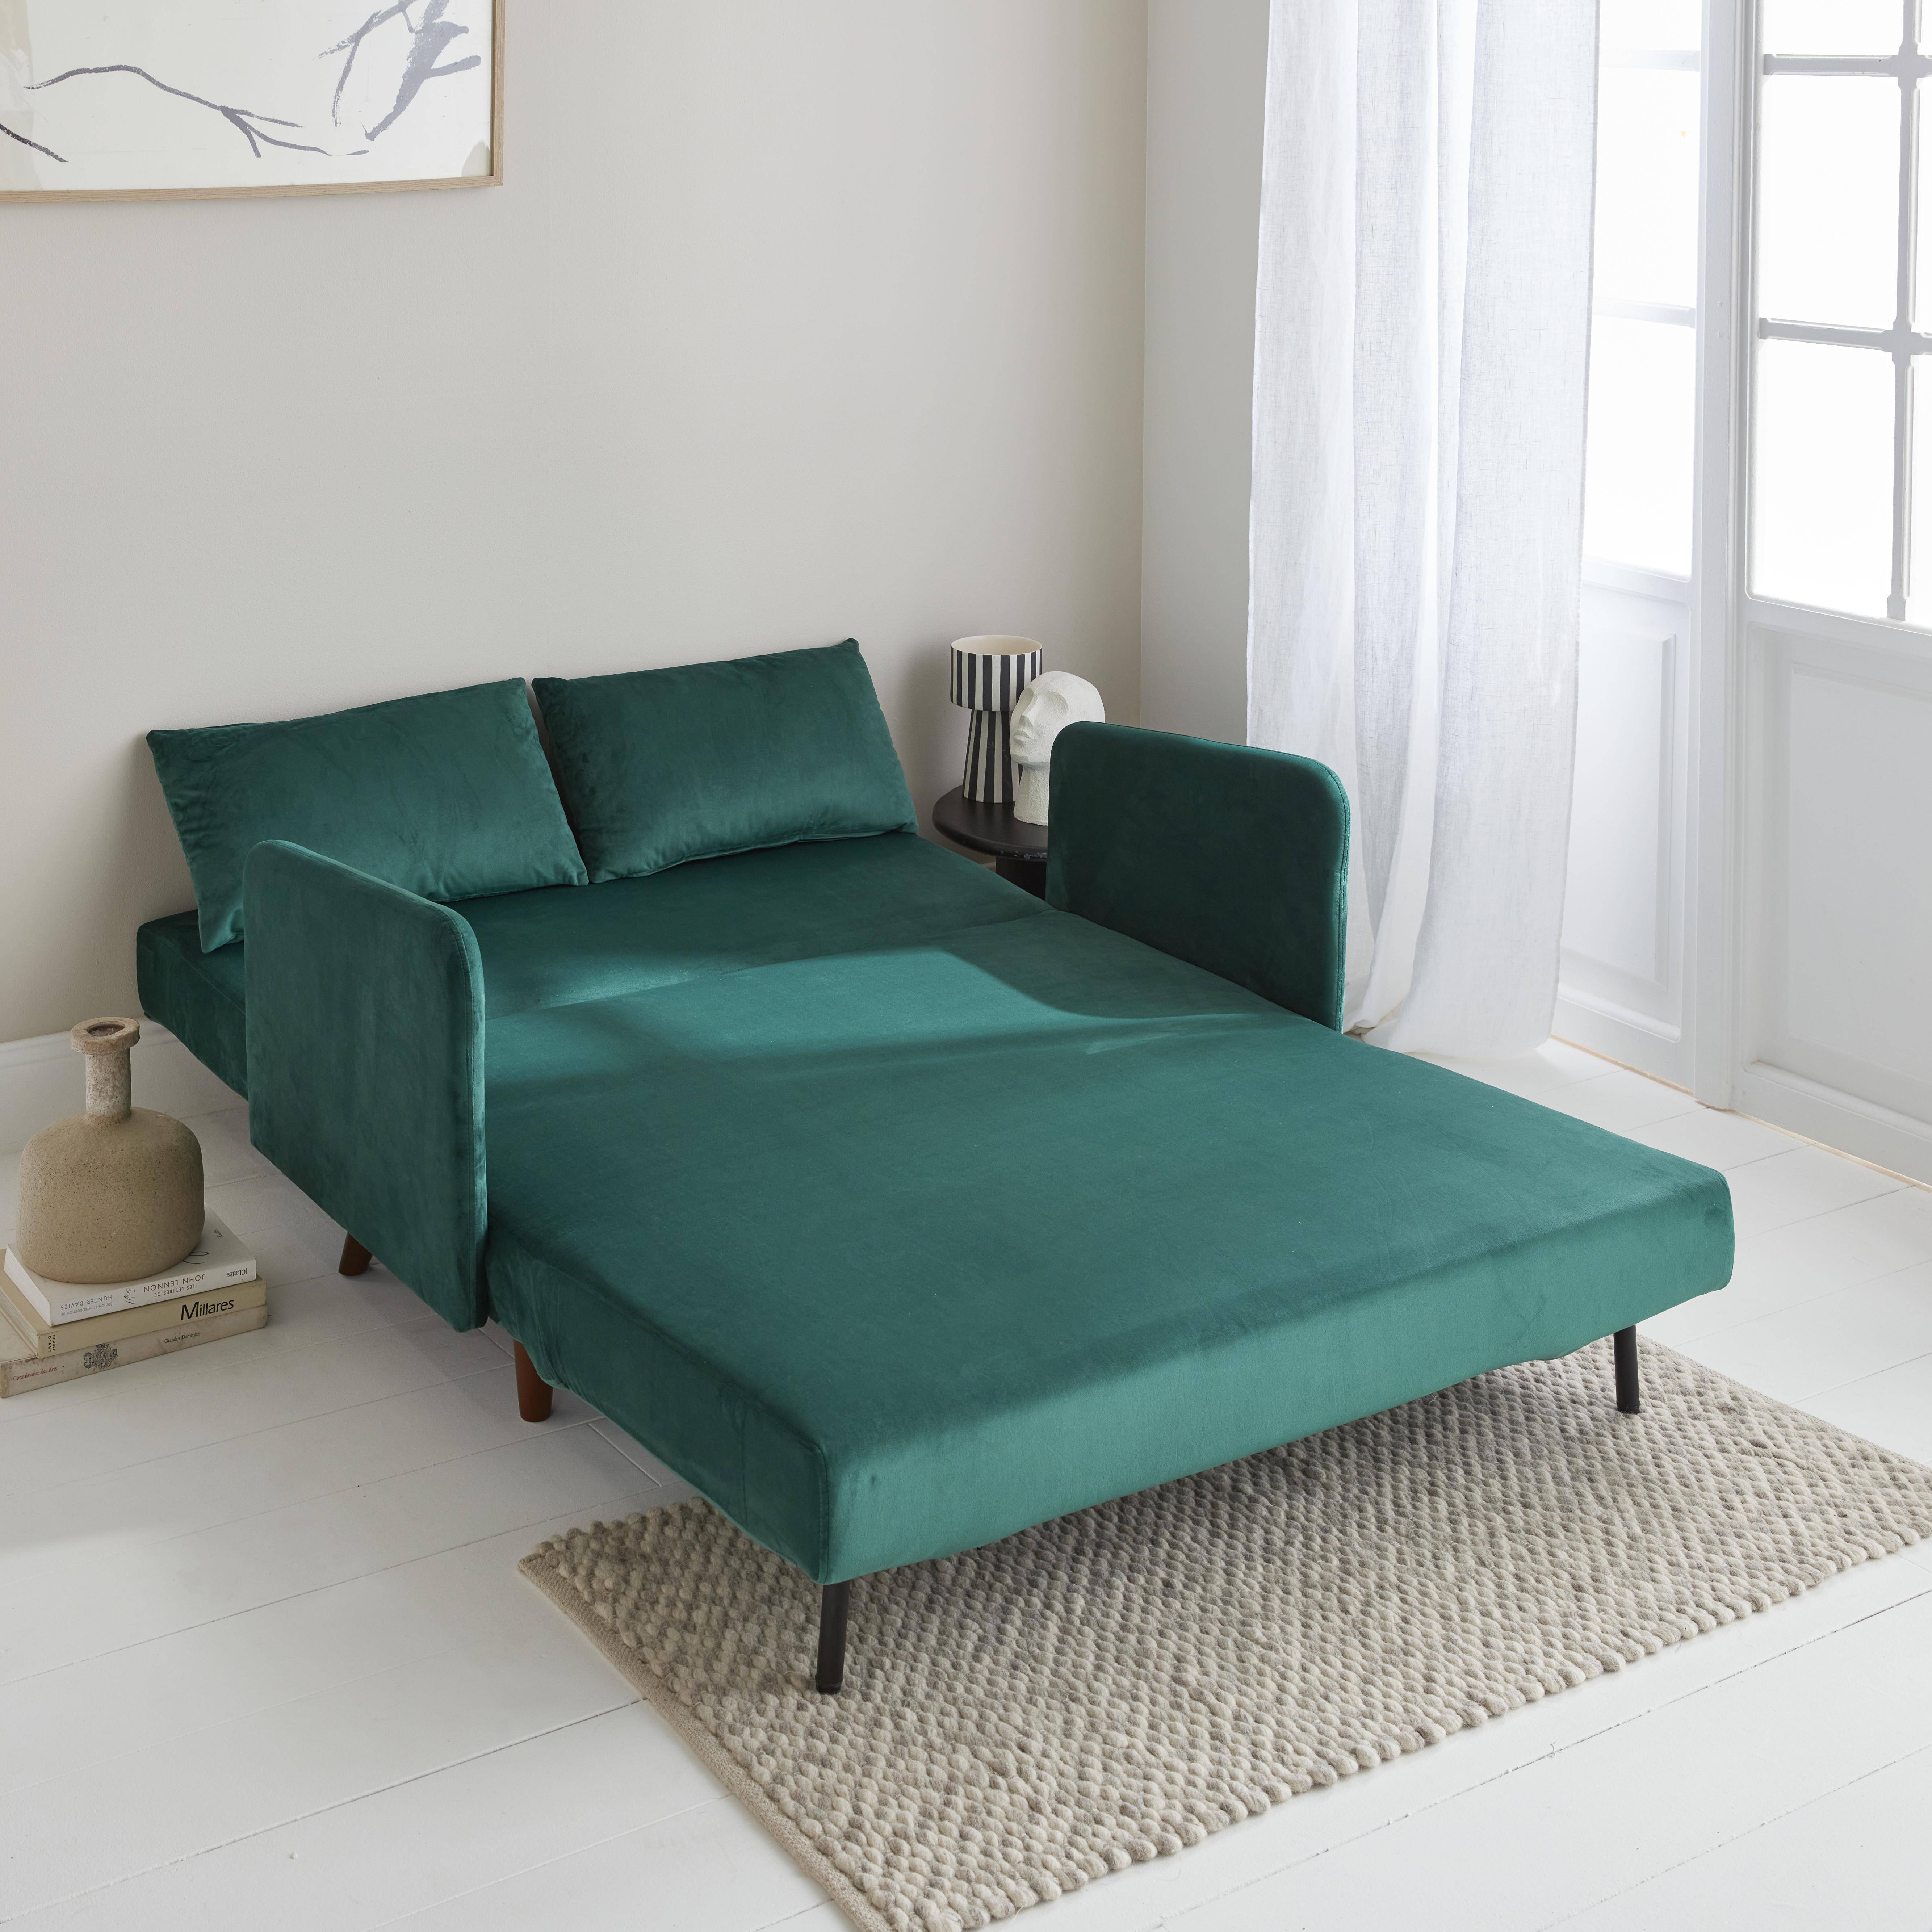 Divano-letto in velluto - Panam - Scandinavo a 2 posti, gambe in legno scuro, verde, seduta a panca, schienale reclinabile,sweeek,Photo2